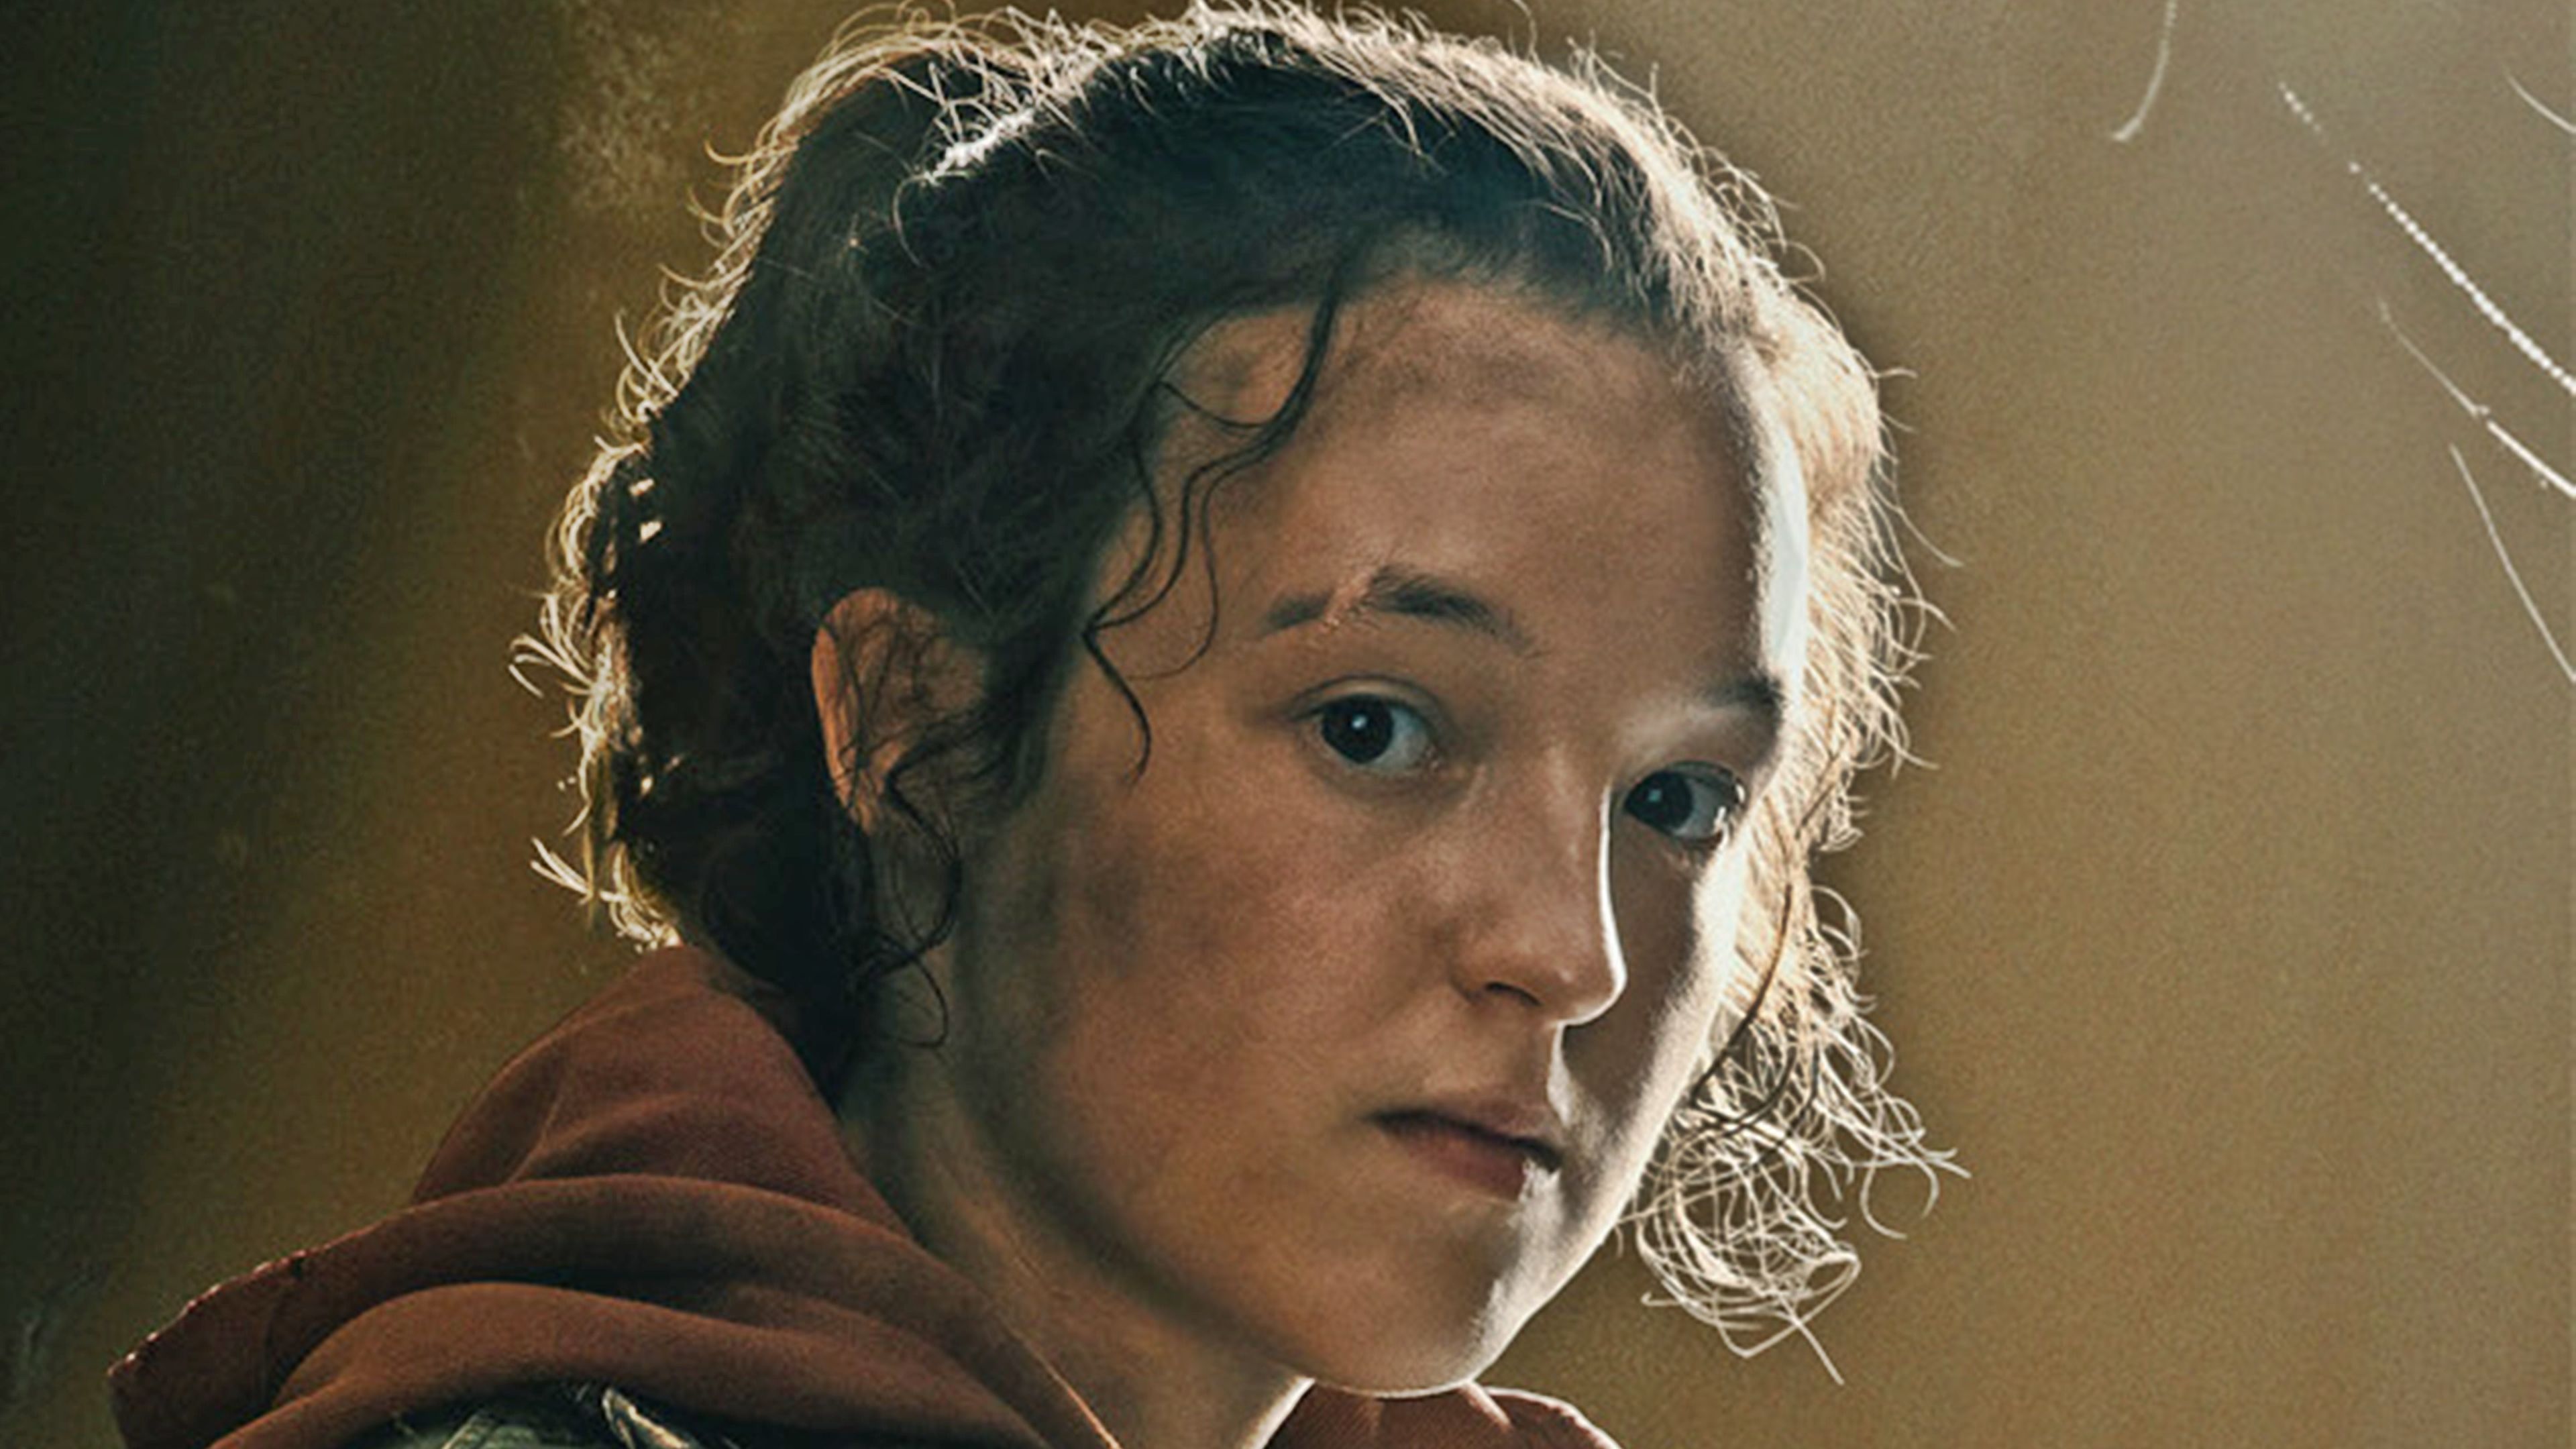 The Last of Us': estreno, reparto y actores de la serie de HBO